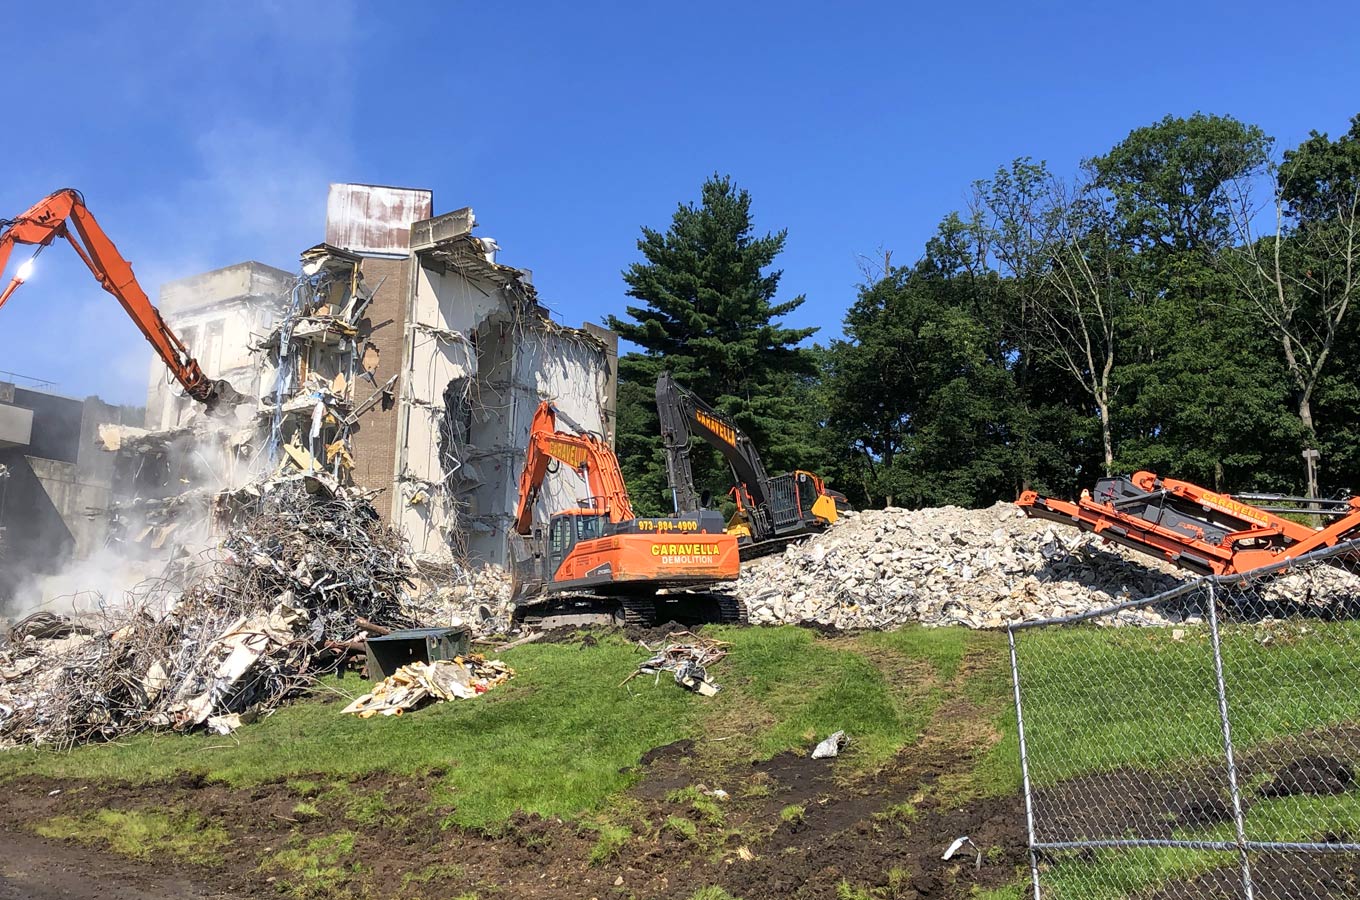 Demolition Services in Raritan, NJ 08869 | Caravella Demolition